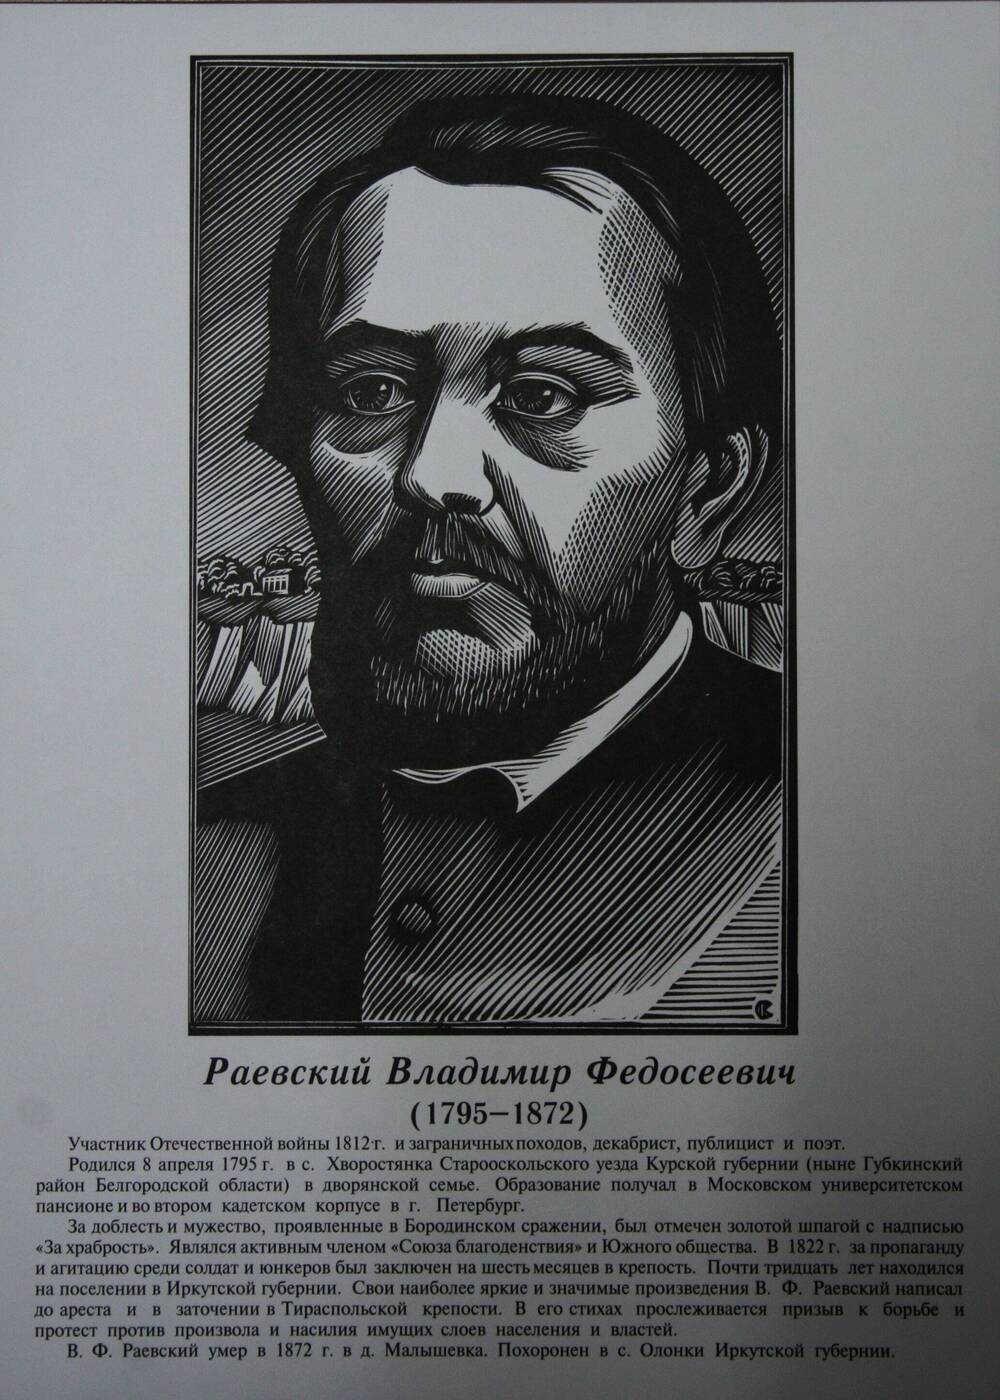 Плакат (фотопортрет) из комплекта Галерея славных имен Белгородчины. Раевский Владимир Федосеевич (1795-1872).